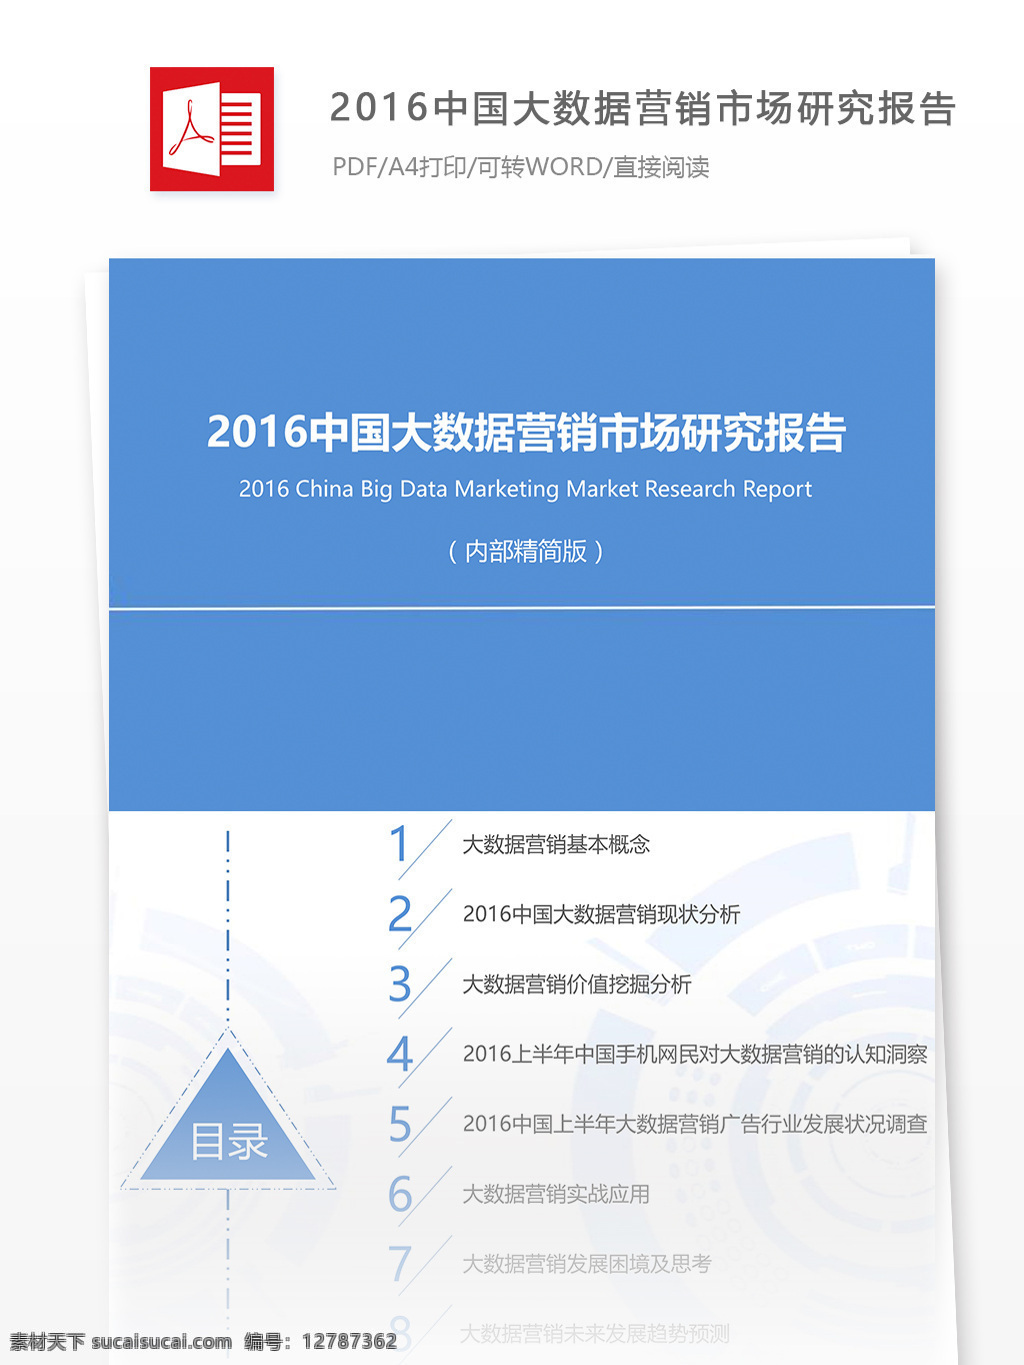 中国 大 数据 营销 市场 行业 分析报告 大数据 数据报告 报告模板 行业报告 大数据产业 大数据分析 营销市场 市场报告